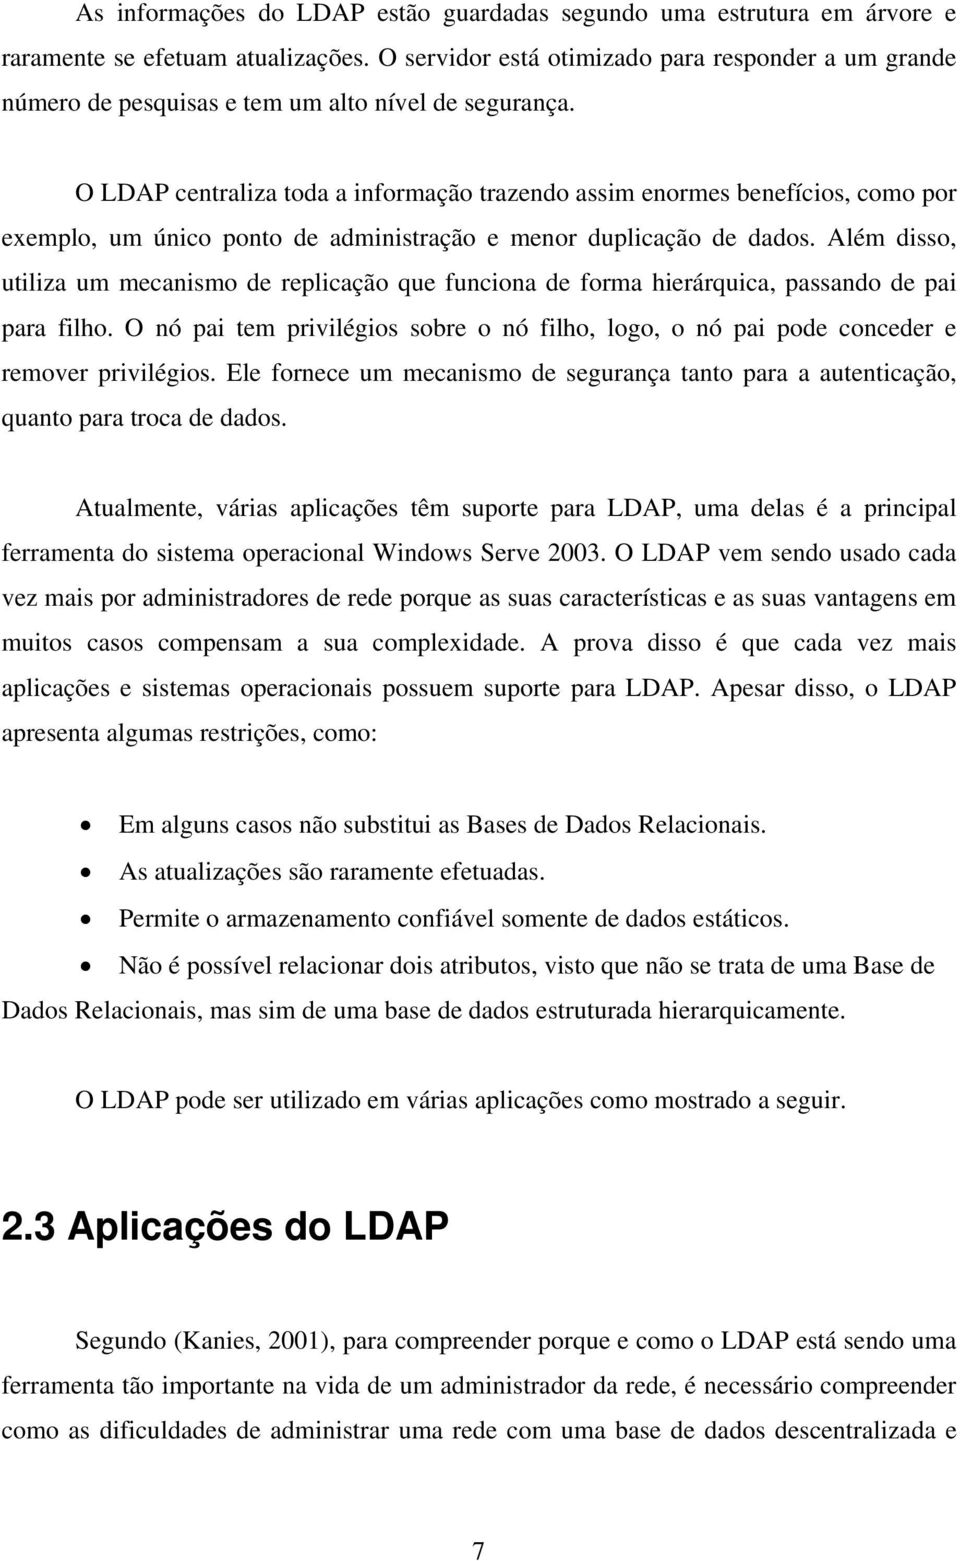 O LDAP centraliza toda a informação trazendo assim enormes benefícios, como por exemplo, um único ponto de administração e menor duplicação de dados.